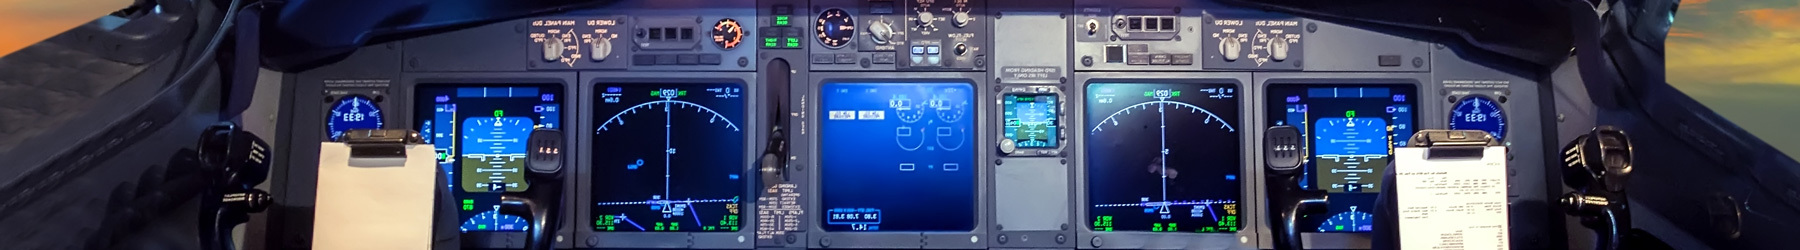 Cockpit avancé avec instruments de vol numériques et vue du ciel au crépuscule.